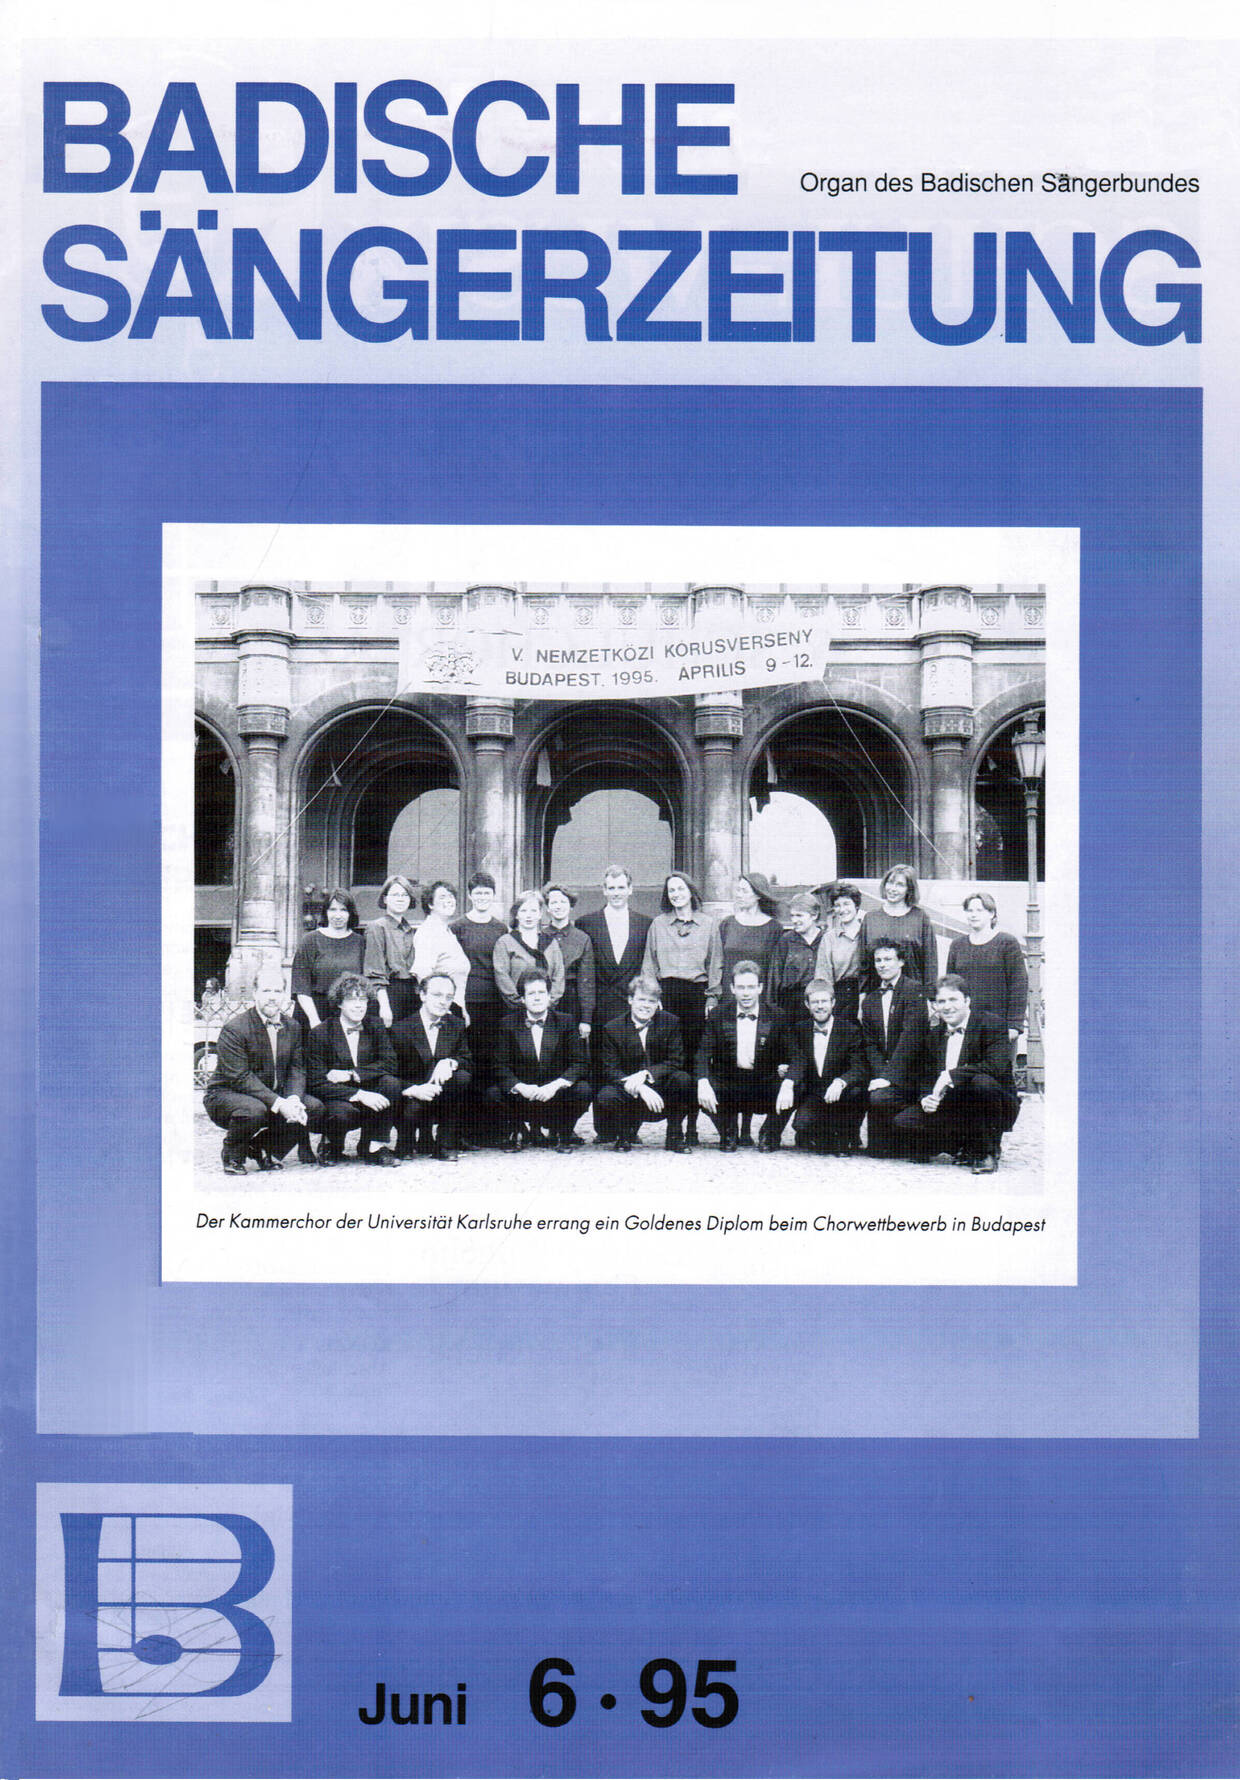 Badische Sängerzeitung zum Chorwettbewerb Budapest April 1995